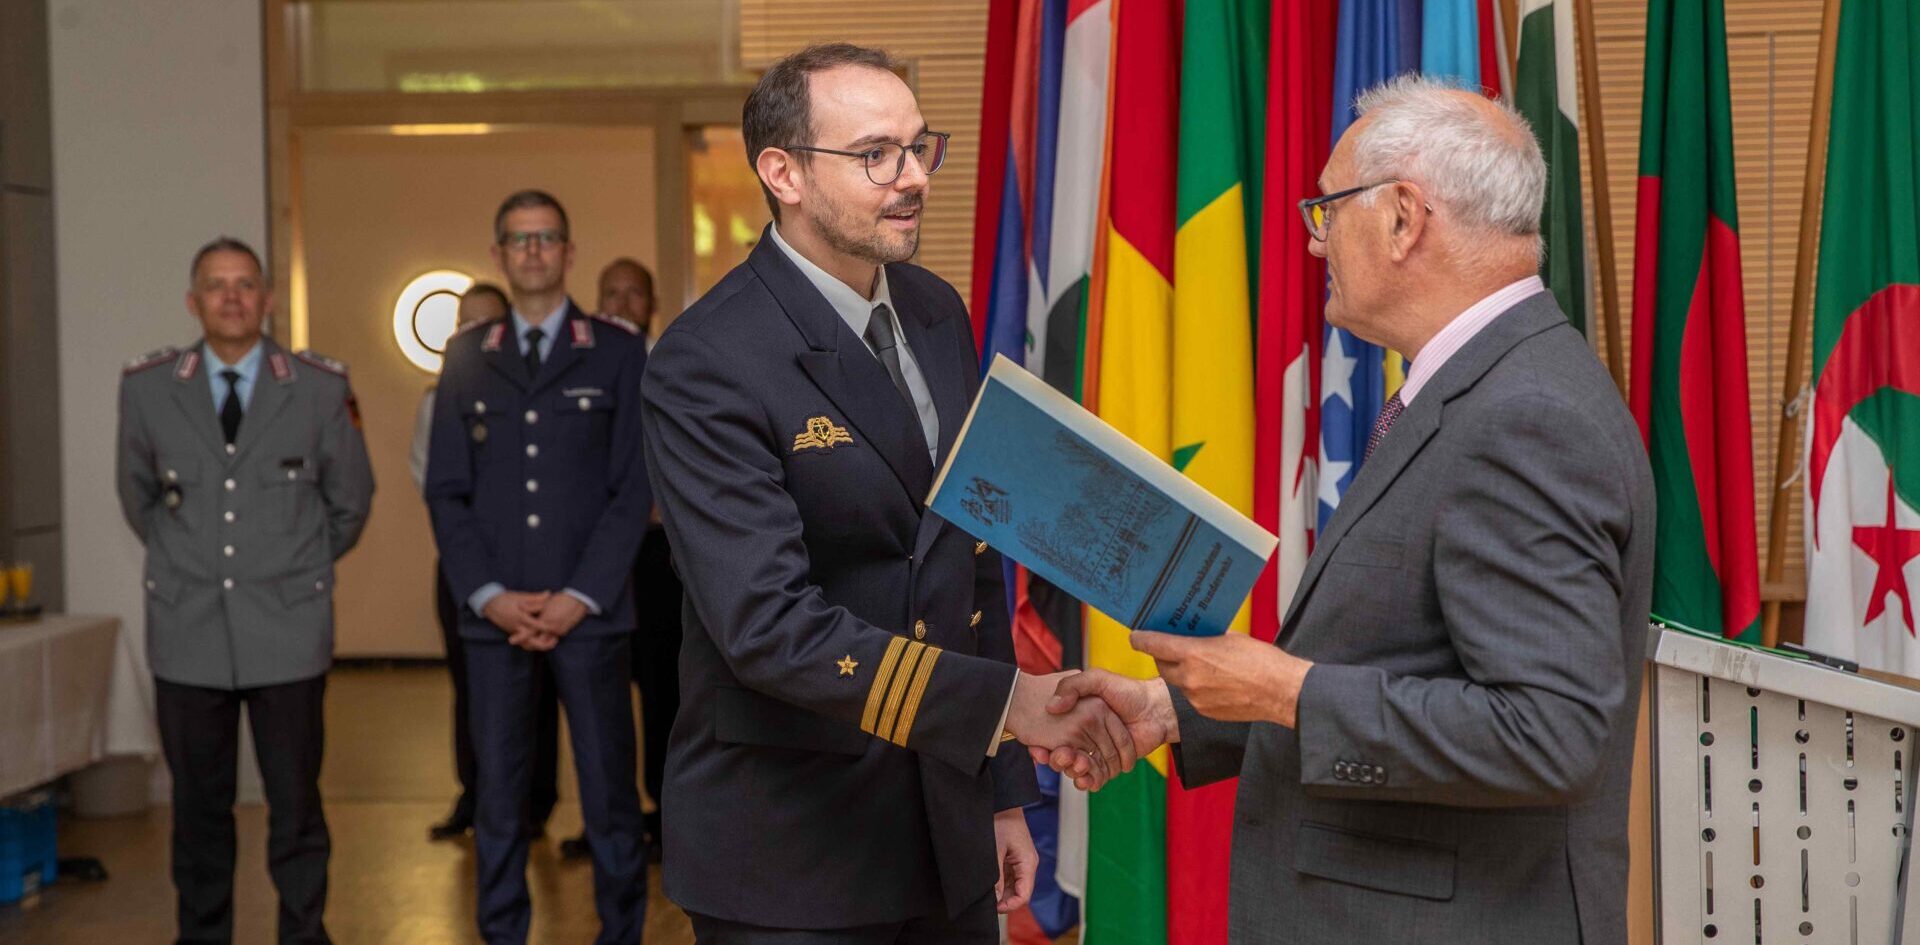 Führungsakademie der Bundeswehr, Verleihung
Admiral-Wellershoff-Preis der MOV an Korvettenkapitän Hoppe. Foto: FüAkBw/InfoA